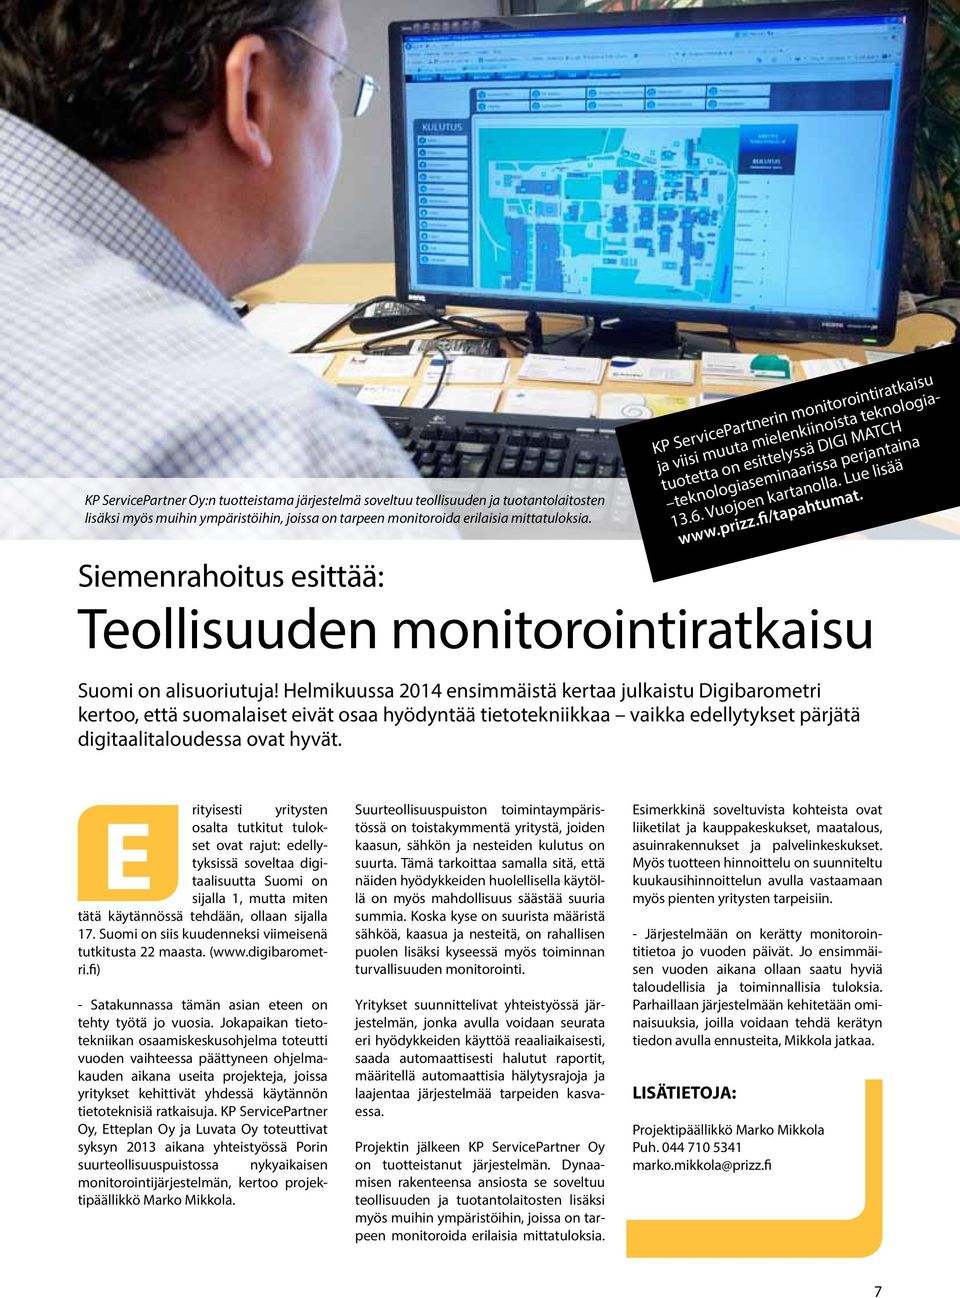 fi/tapahtumat. Siemenrahoitus esittää: Teollisuuden monitorointiratkaisu Suomi on alisuoriutuja!